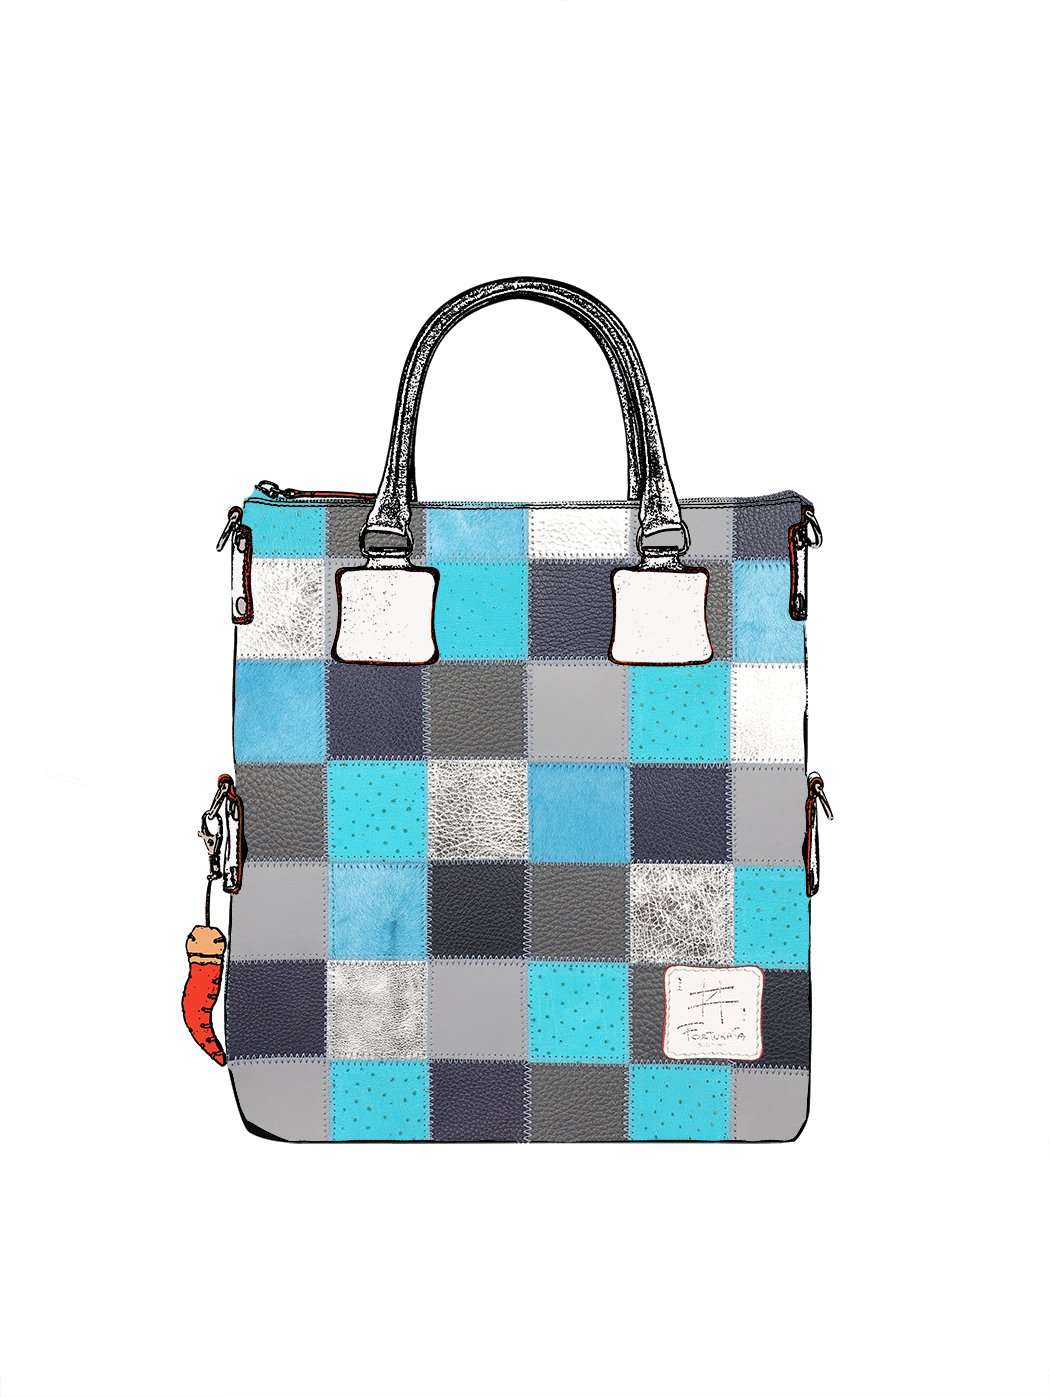 Michael Kors Voyager EW Light Sand Leather Tote Shoulder Bag Handbag Purse  for sale online | eBay